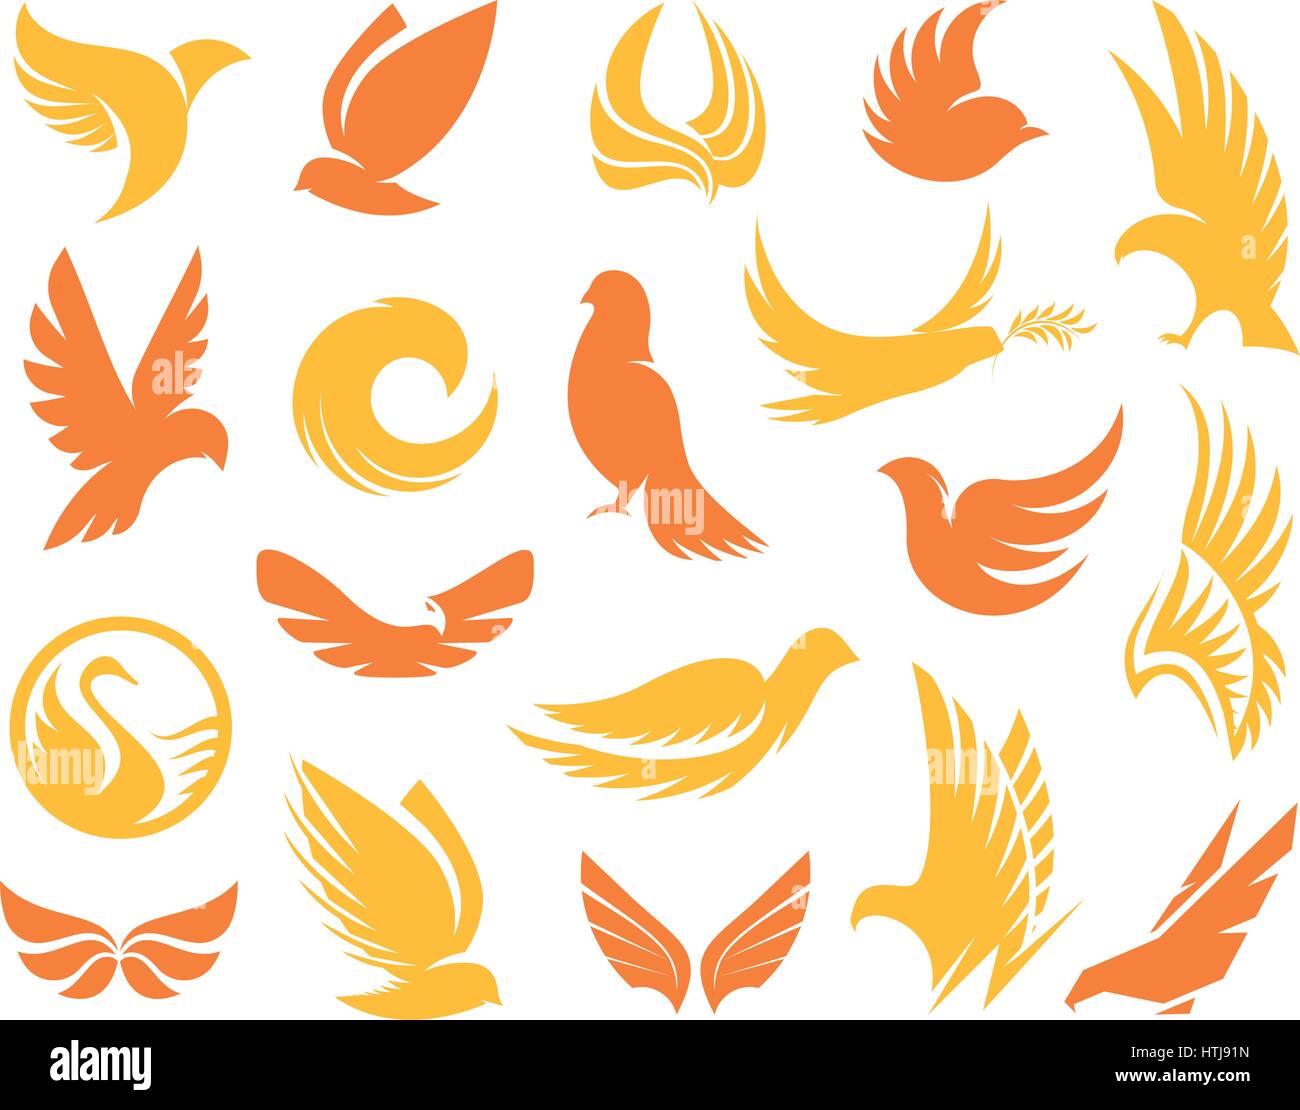 Abstract isolato giallo e arancione uccelli sagome collezione logo su sfondo bianco, le ali e le piume elementi logotipi set malato del vettore Illustrazione Vettoriale